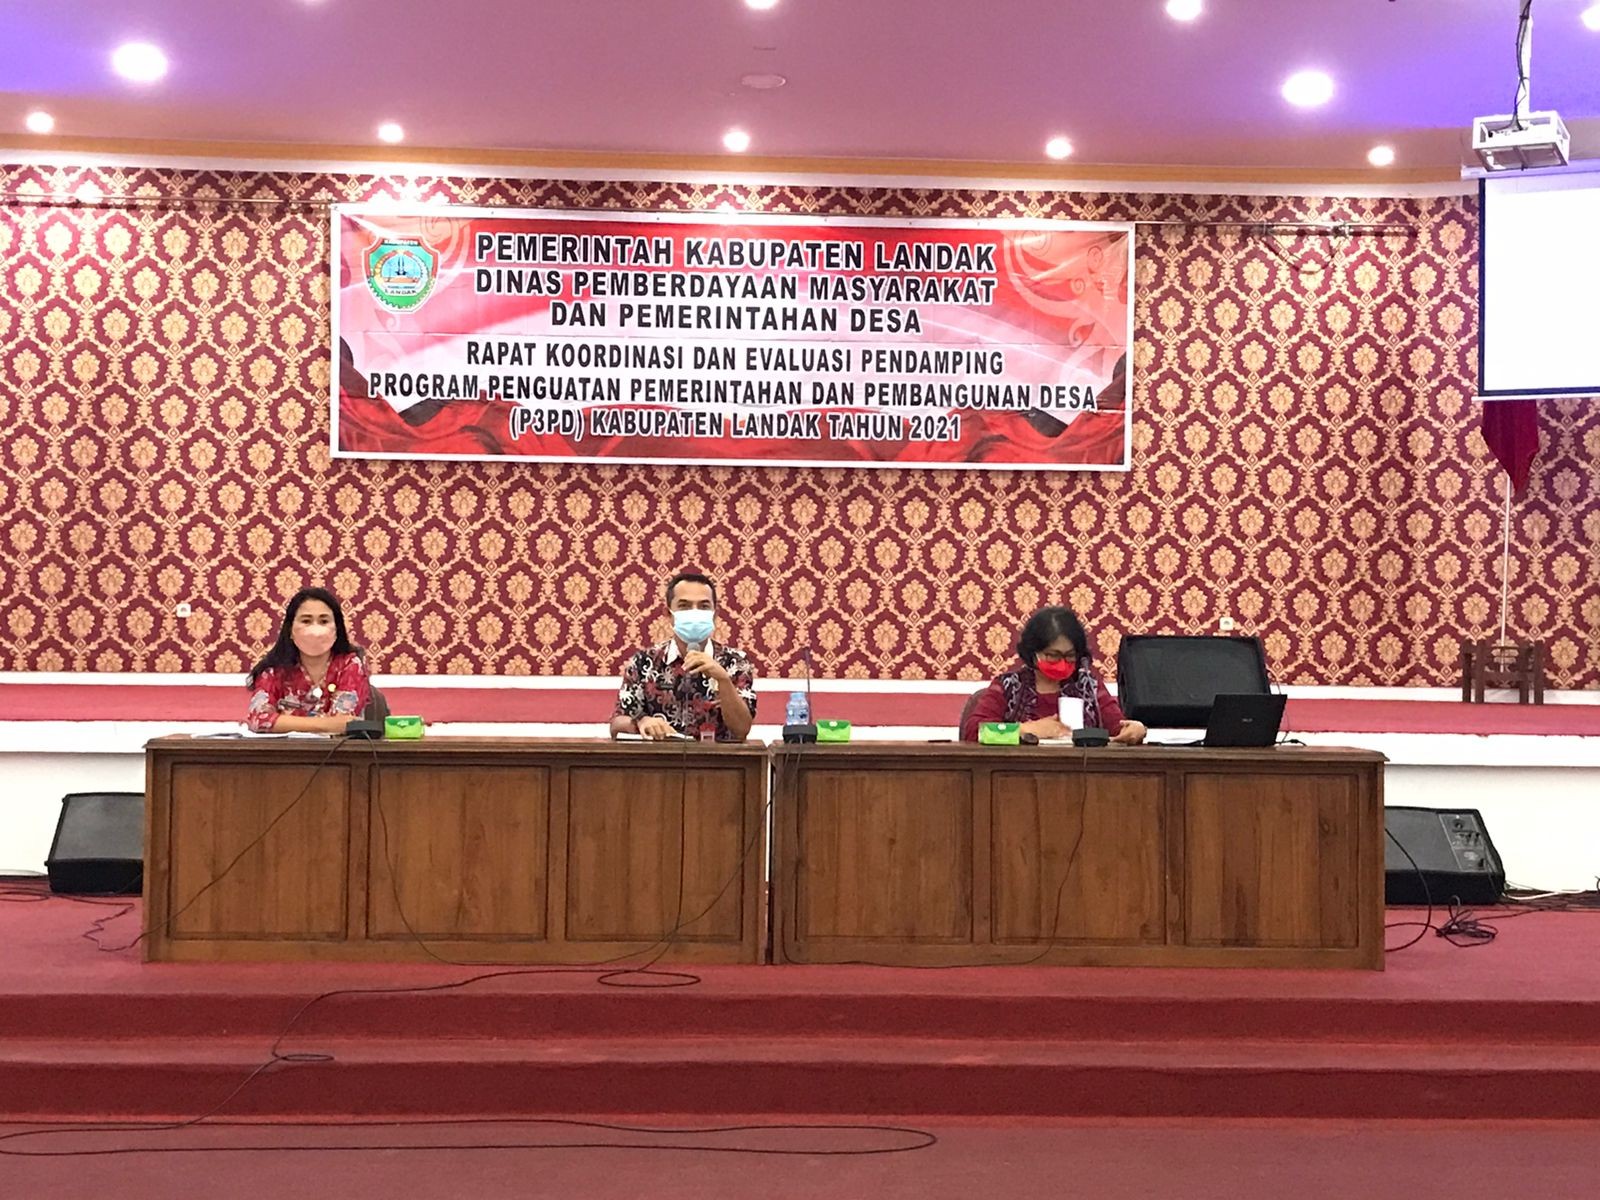 Rapat koordinasi dan evaluasi pendamping Program Penguatan Pemerintahan dan Pembangunan Desa (P3PD) 